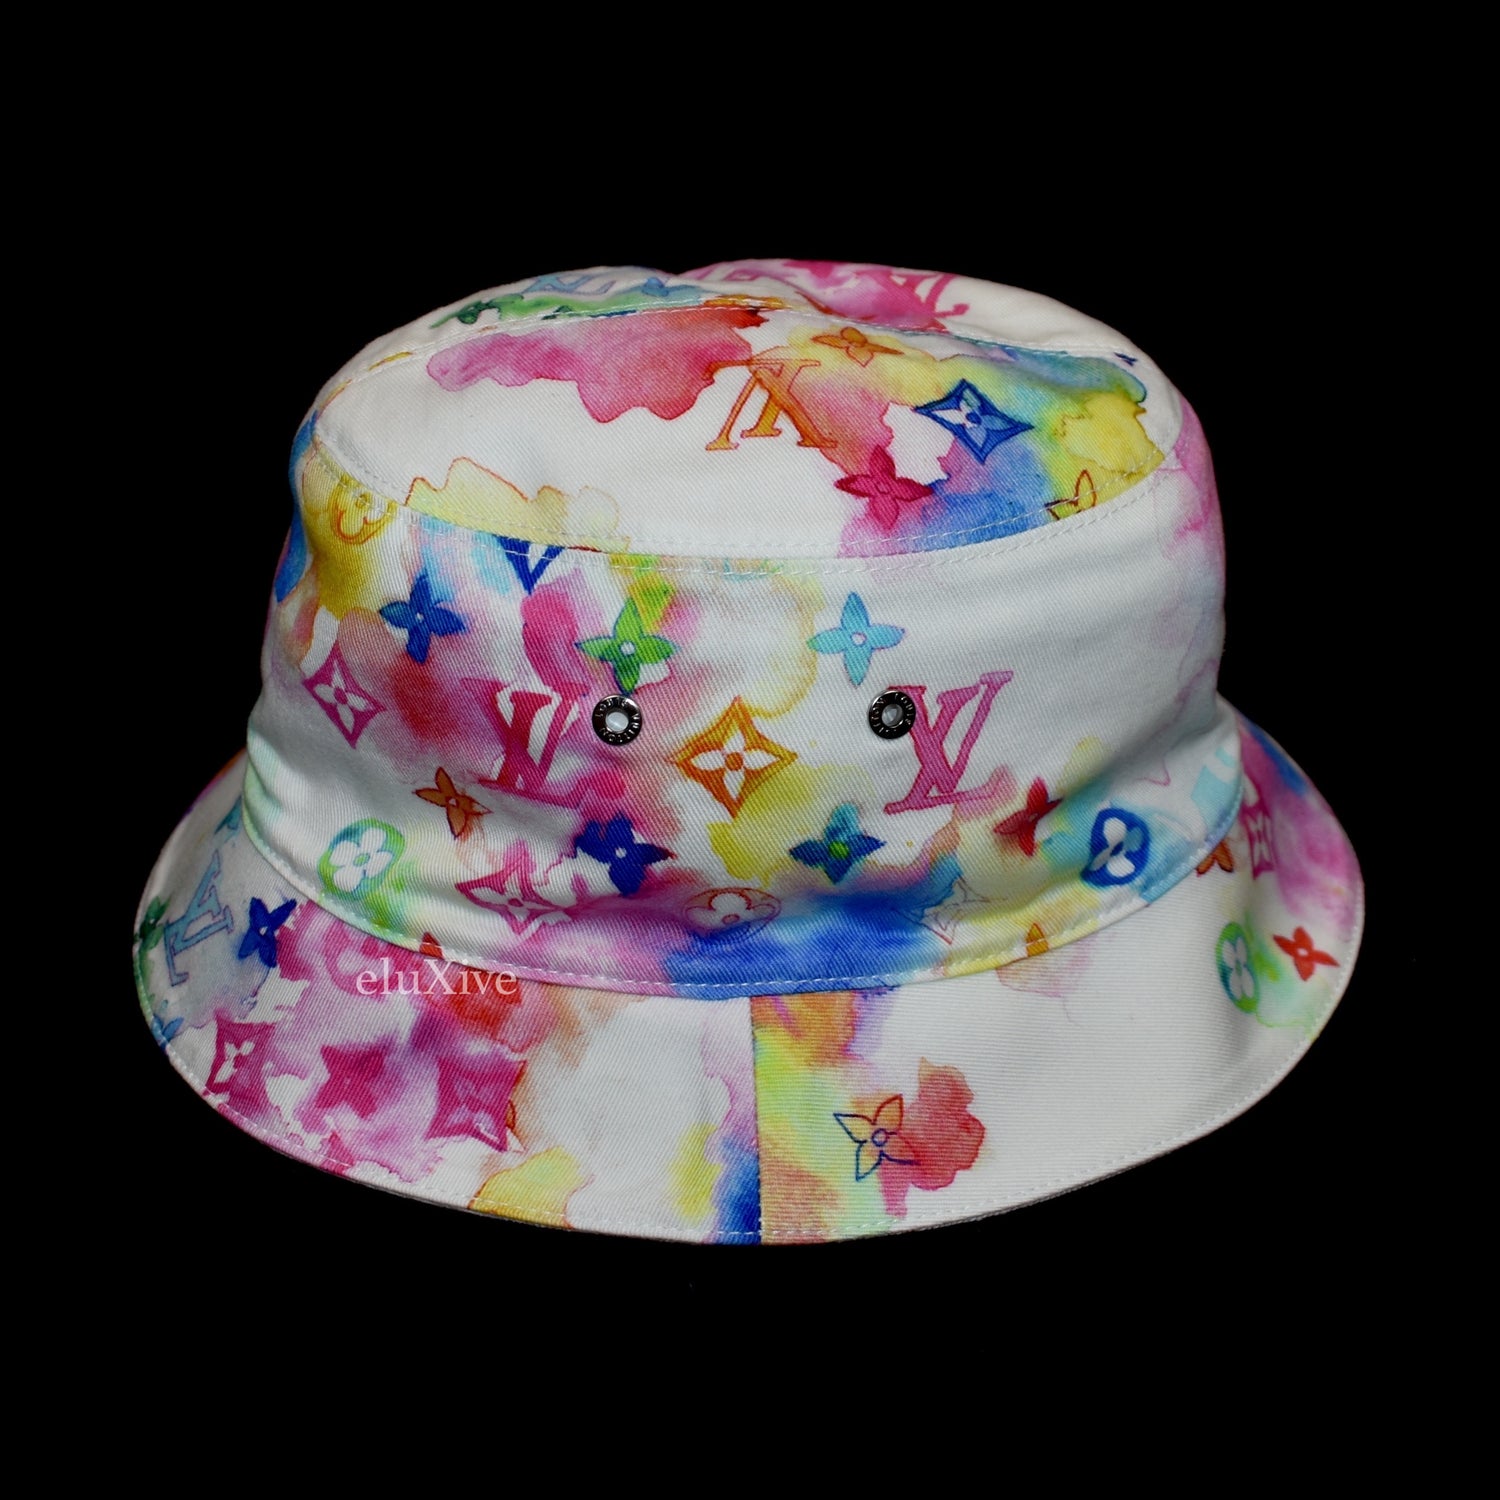 LOUIS VUITTON Watercolor Cotton Transformable Bob Bucket Hat 58 Multicolor  967873